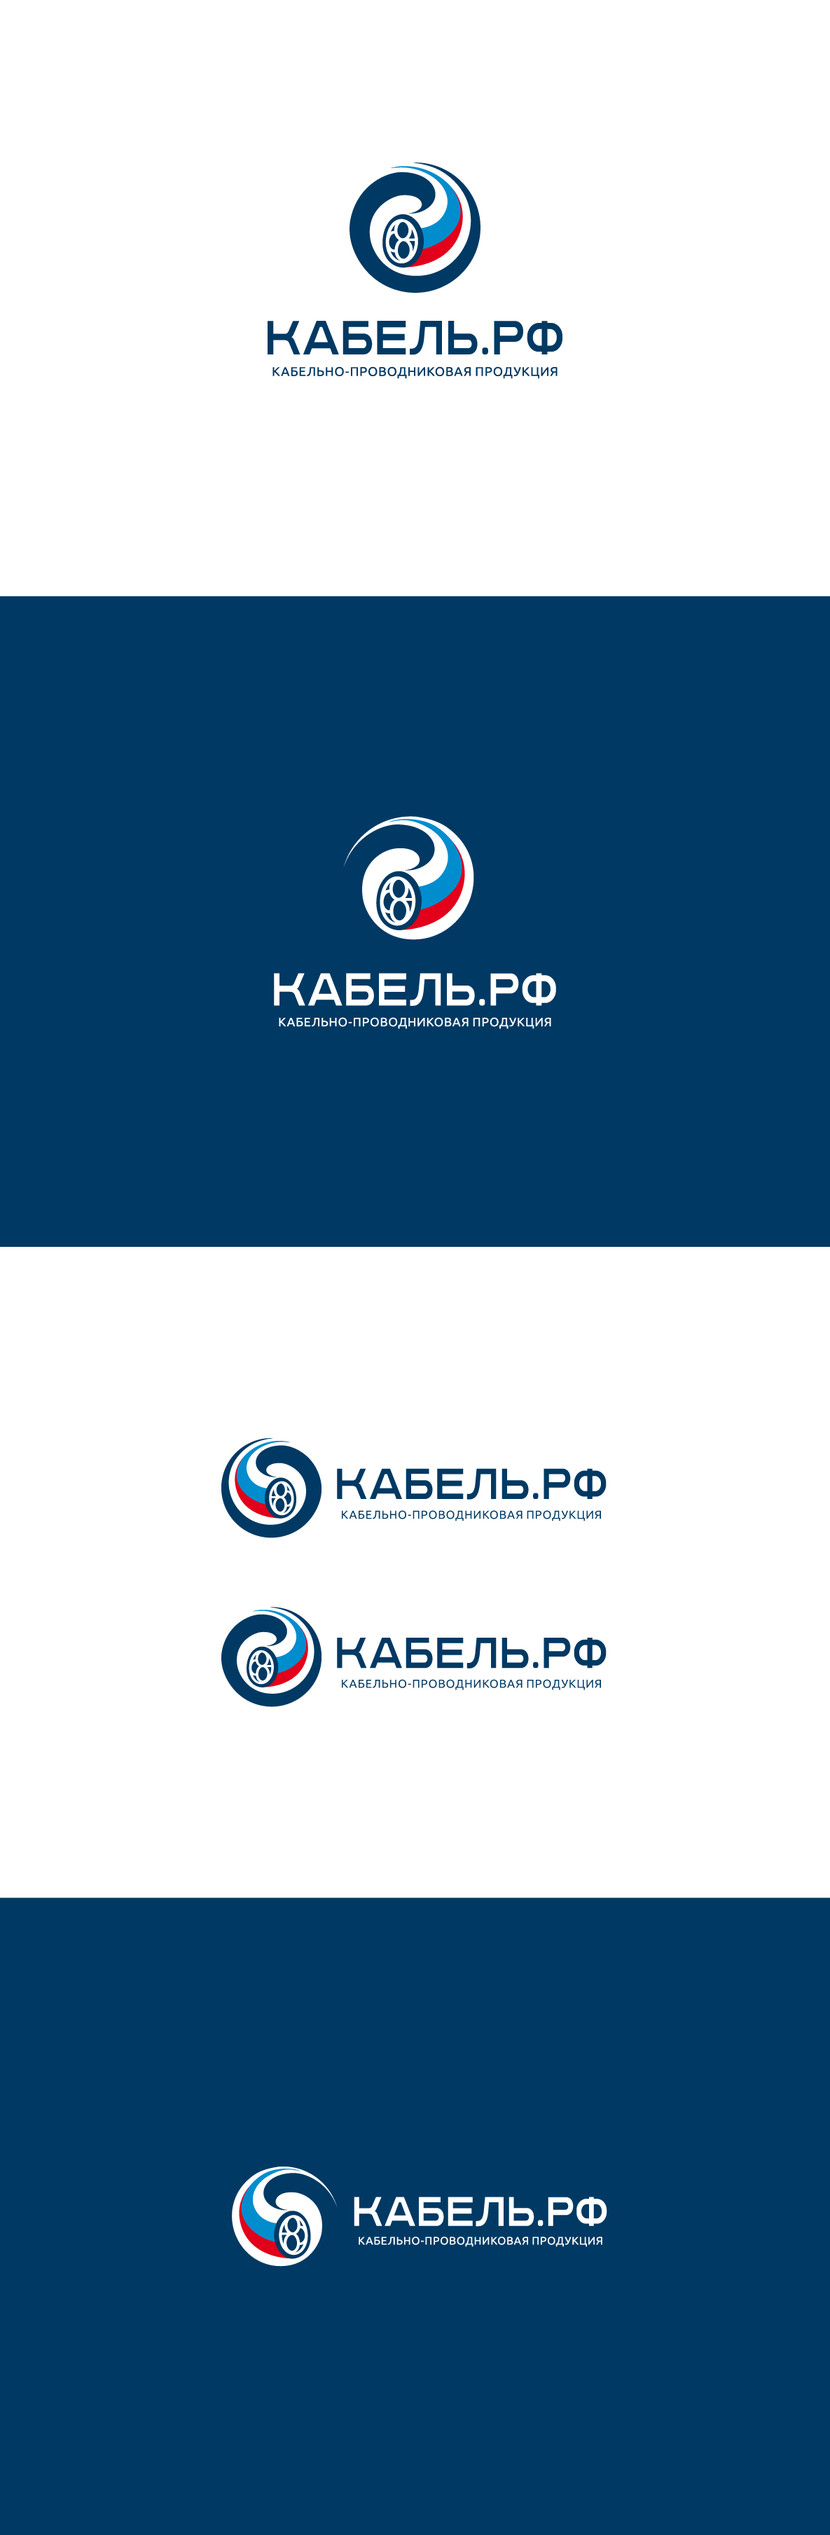 1 - Создание логотипа для компании "Кабель.РФ"